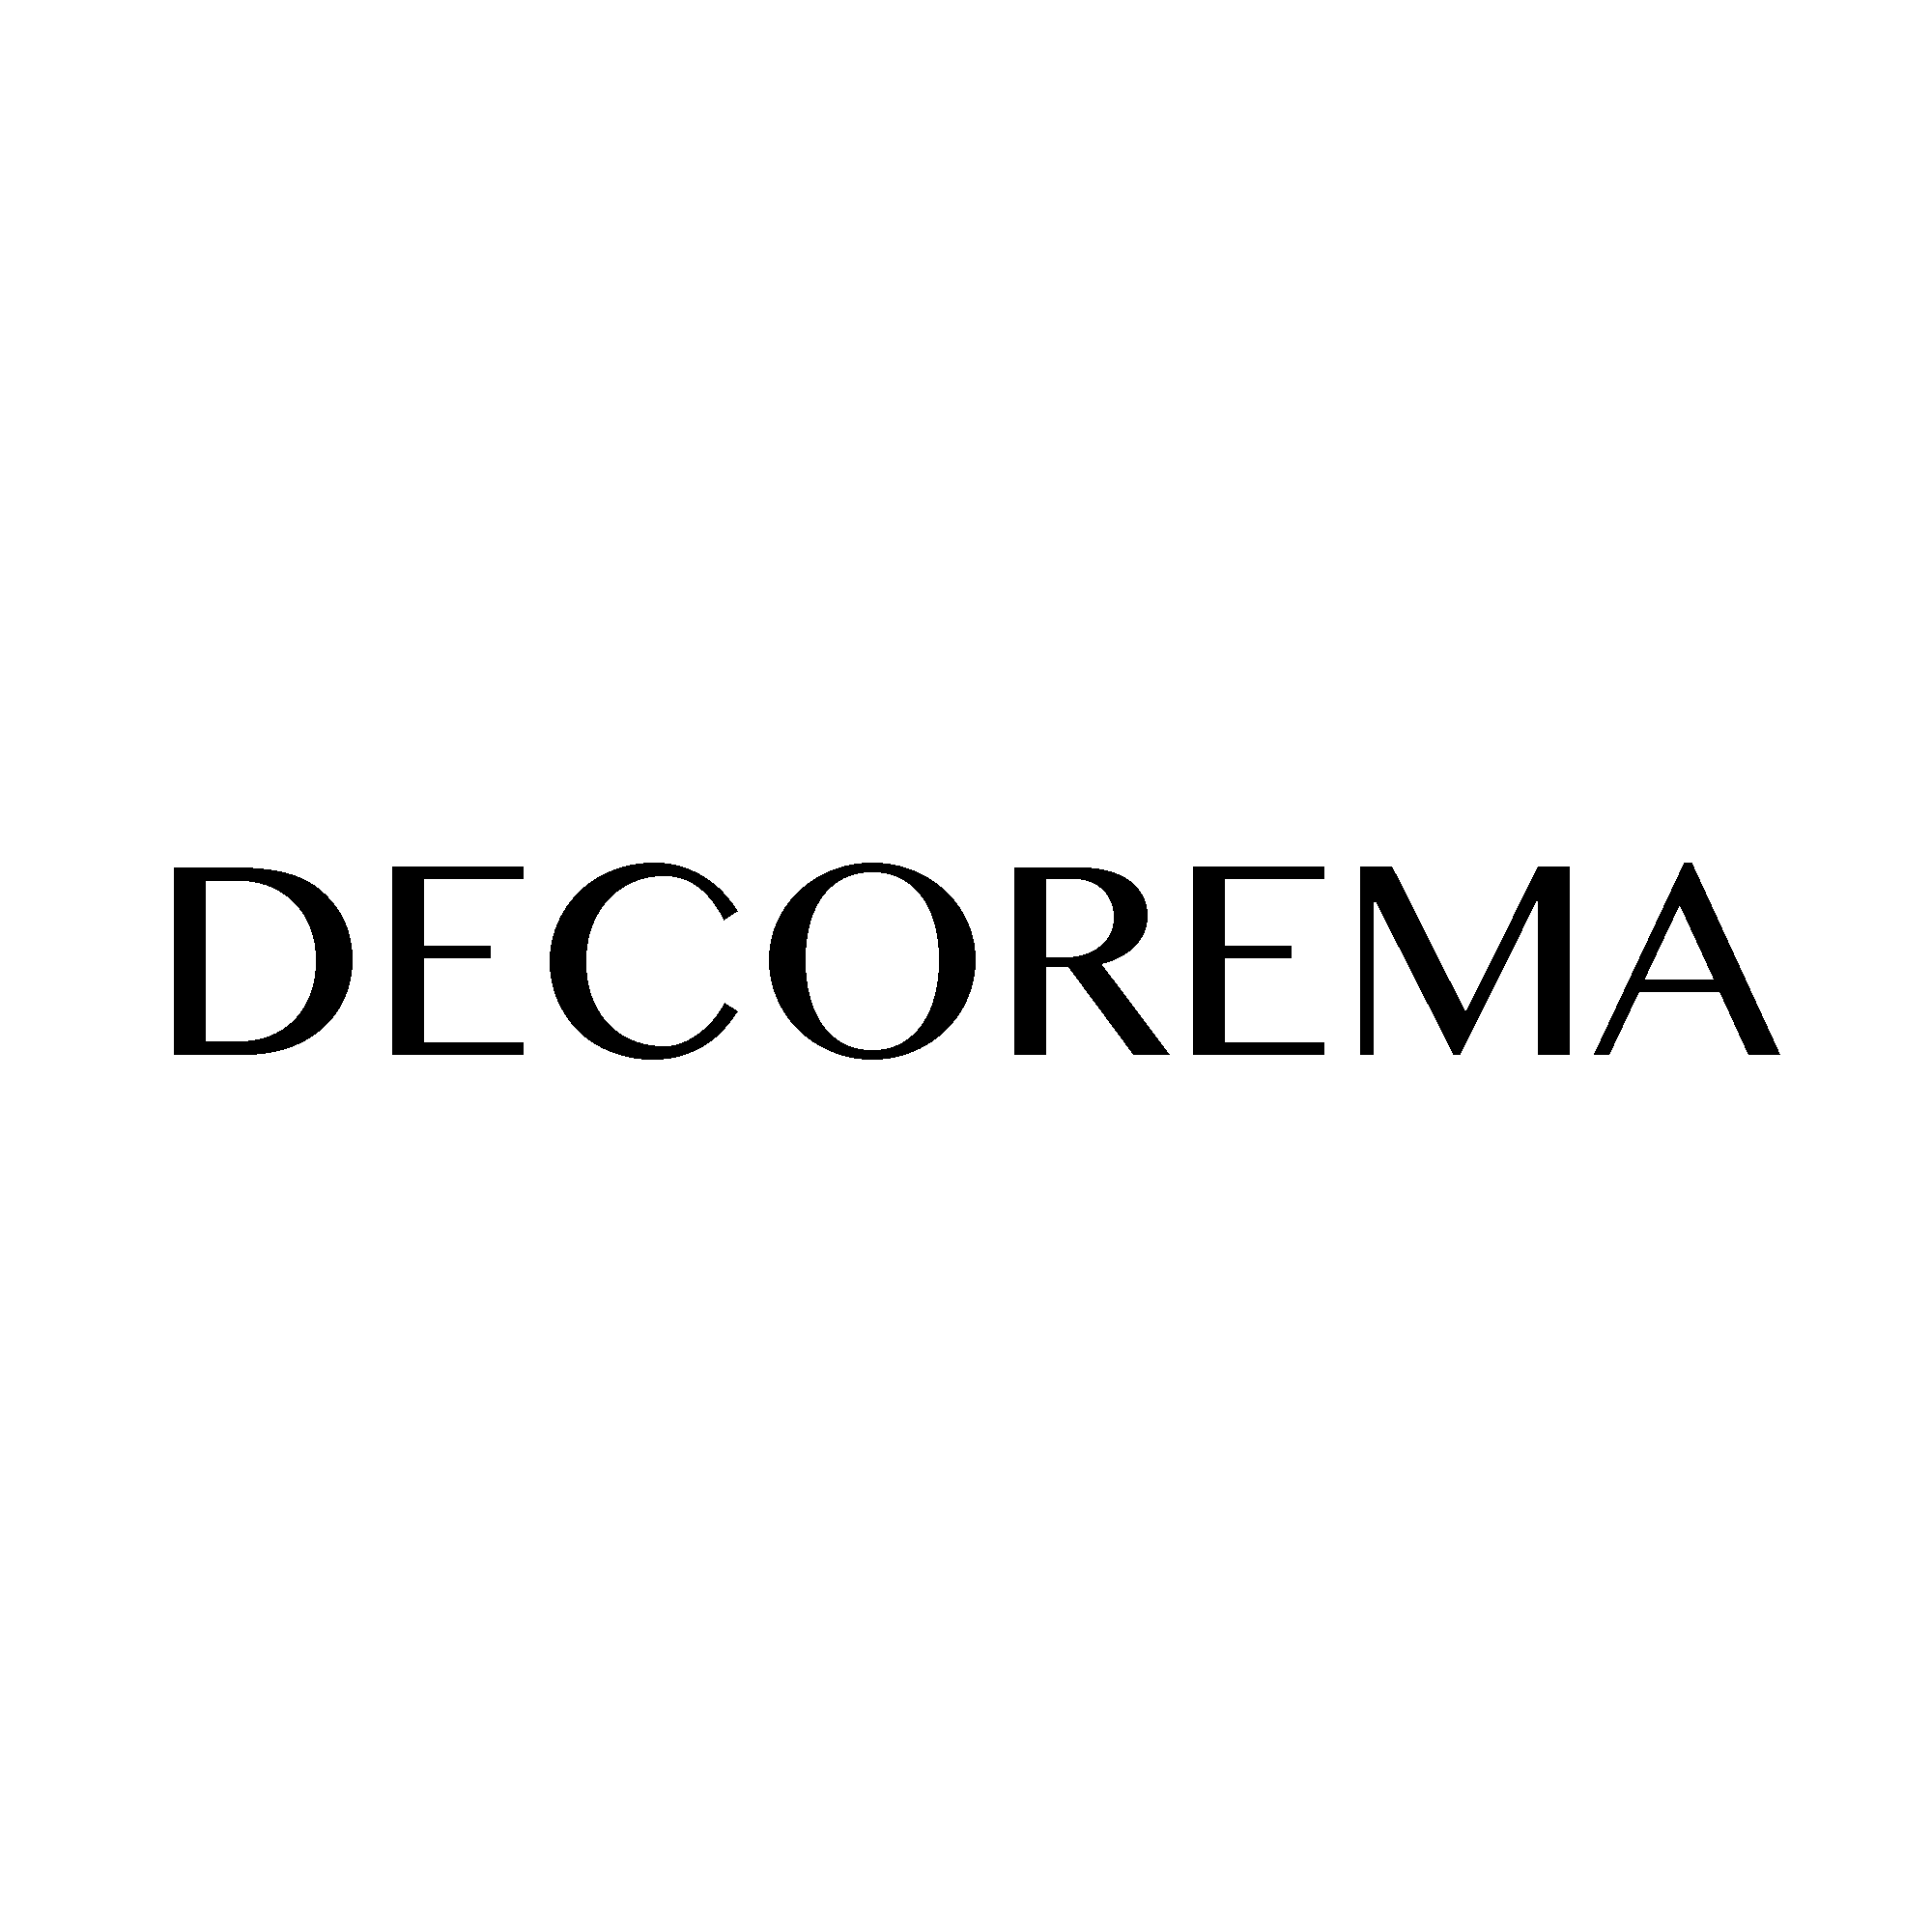 Decorma - Smarta lösningar för dig och hemmet